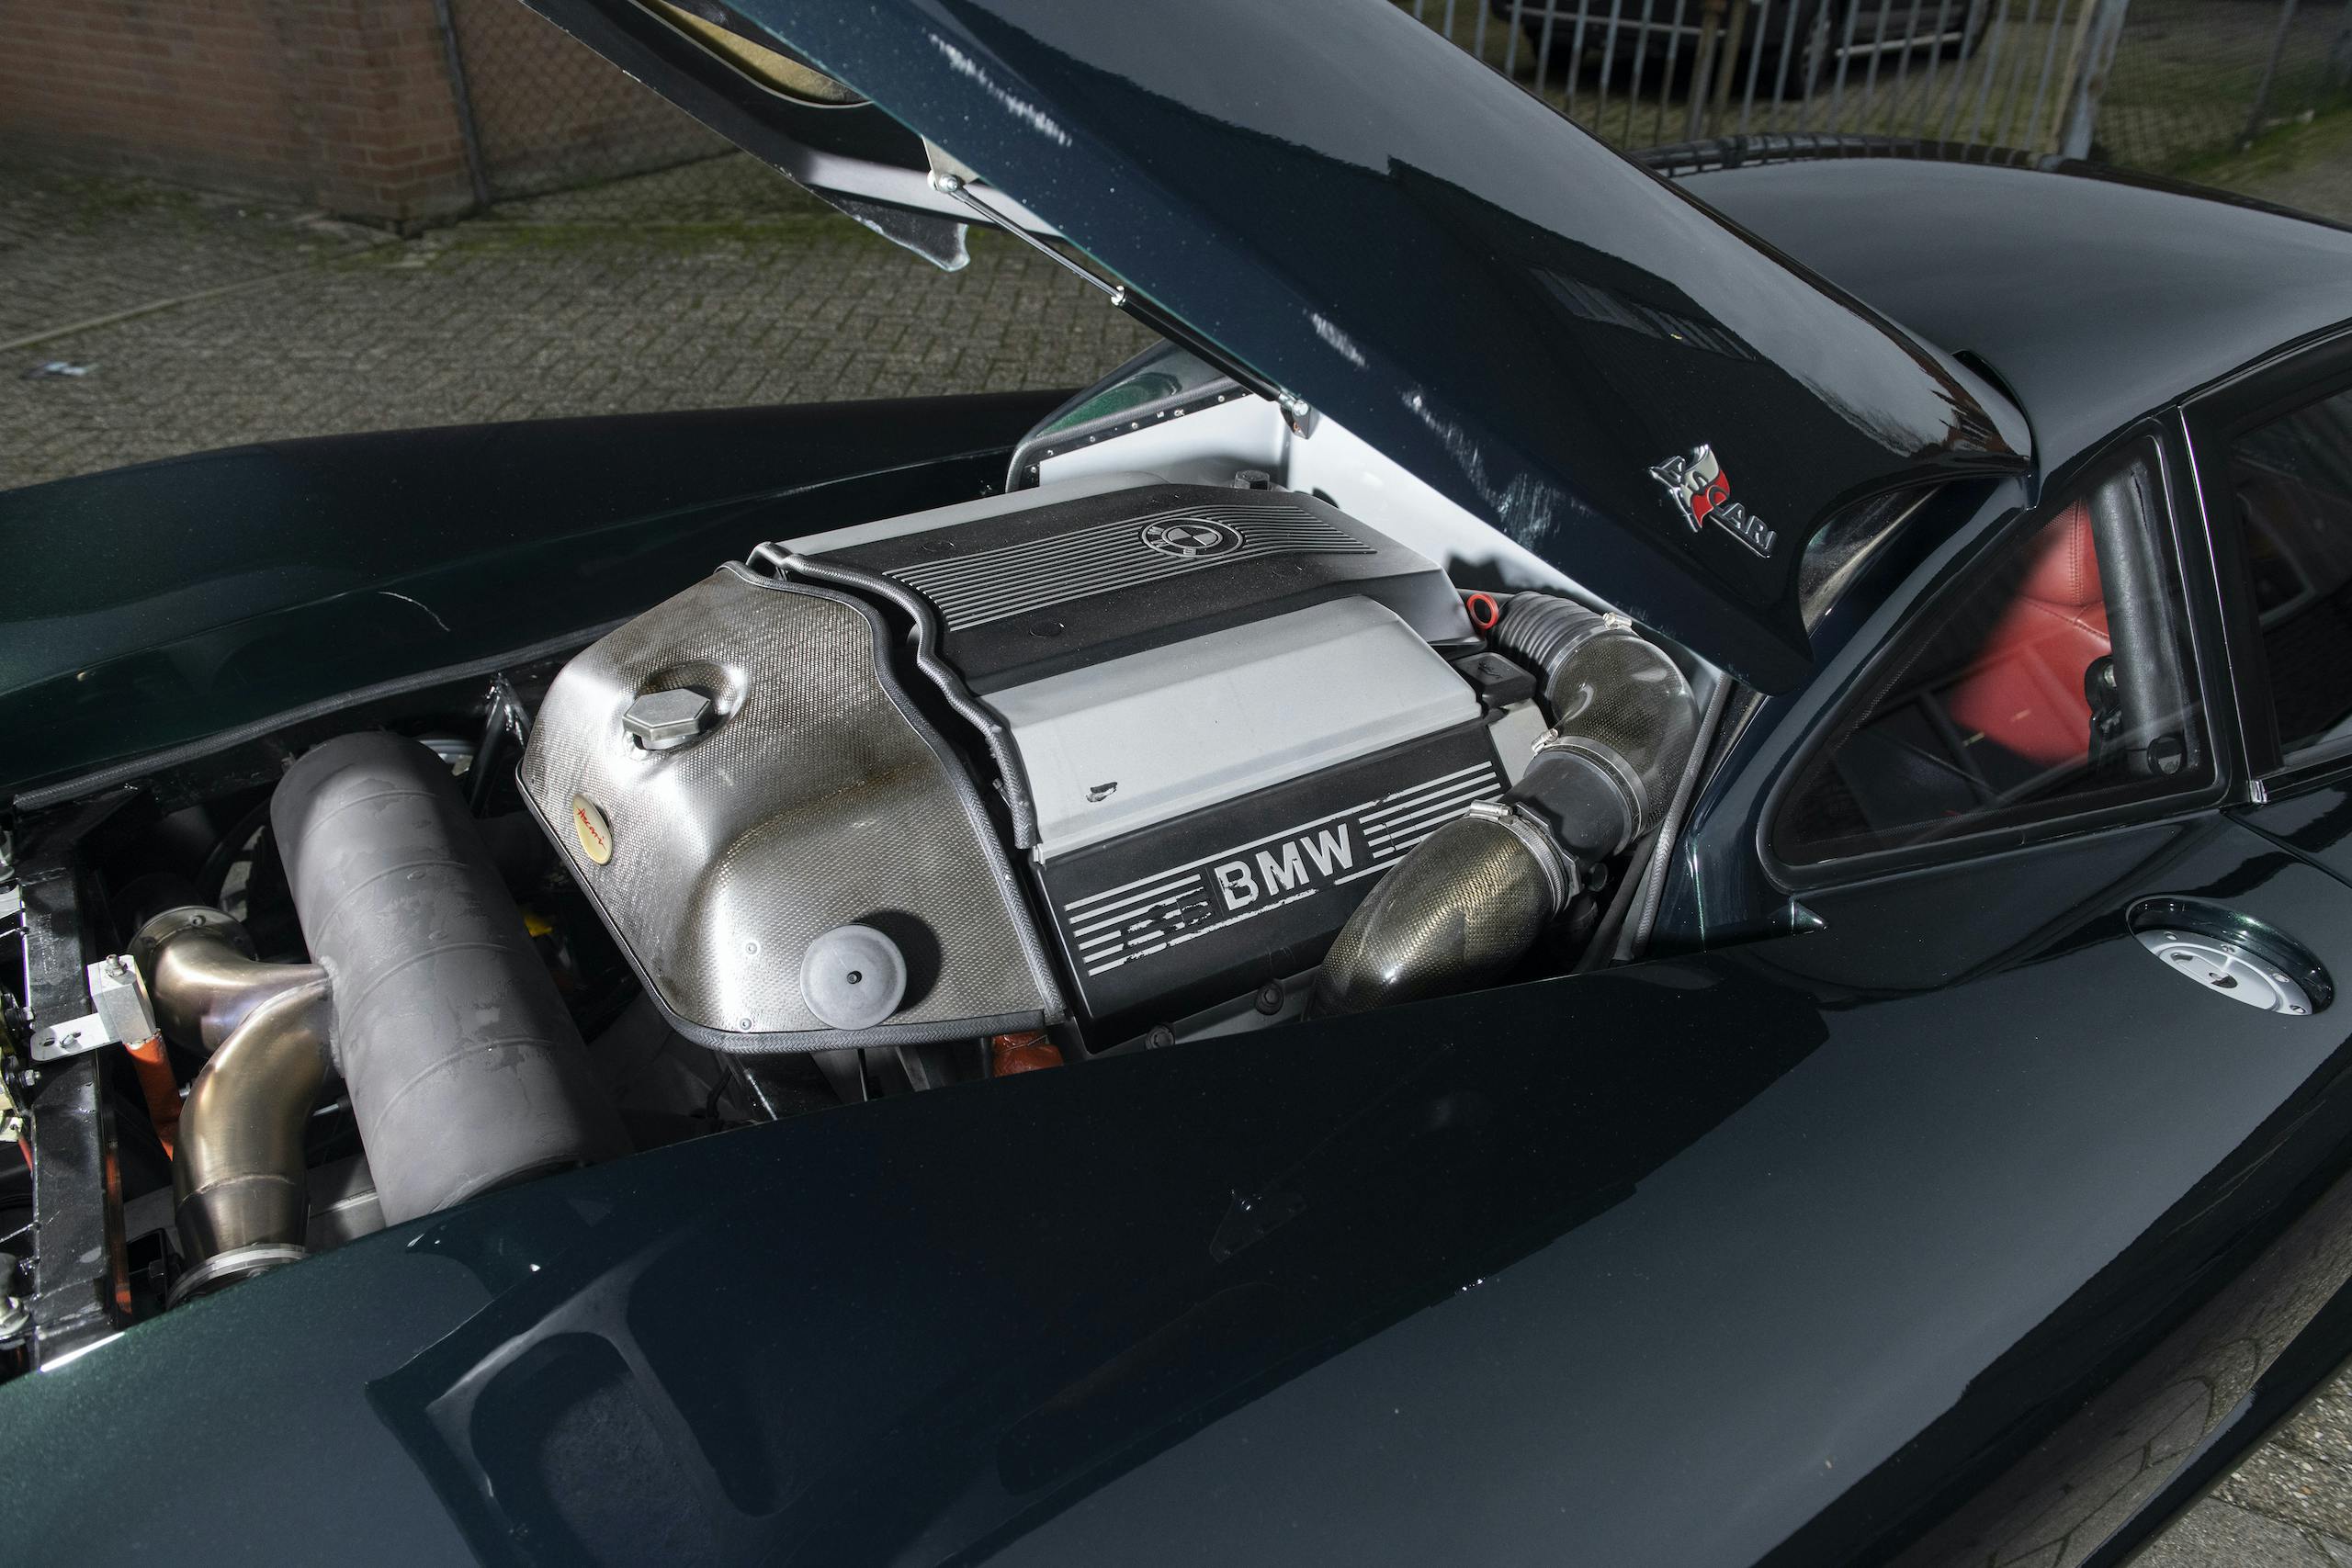 1997 Ascari Ecosse engine